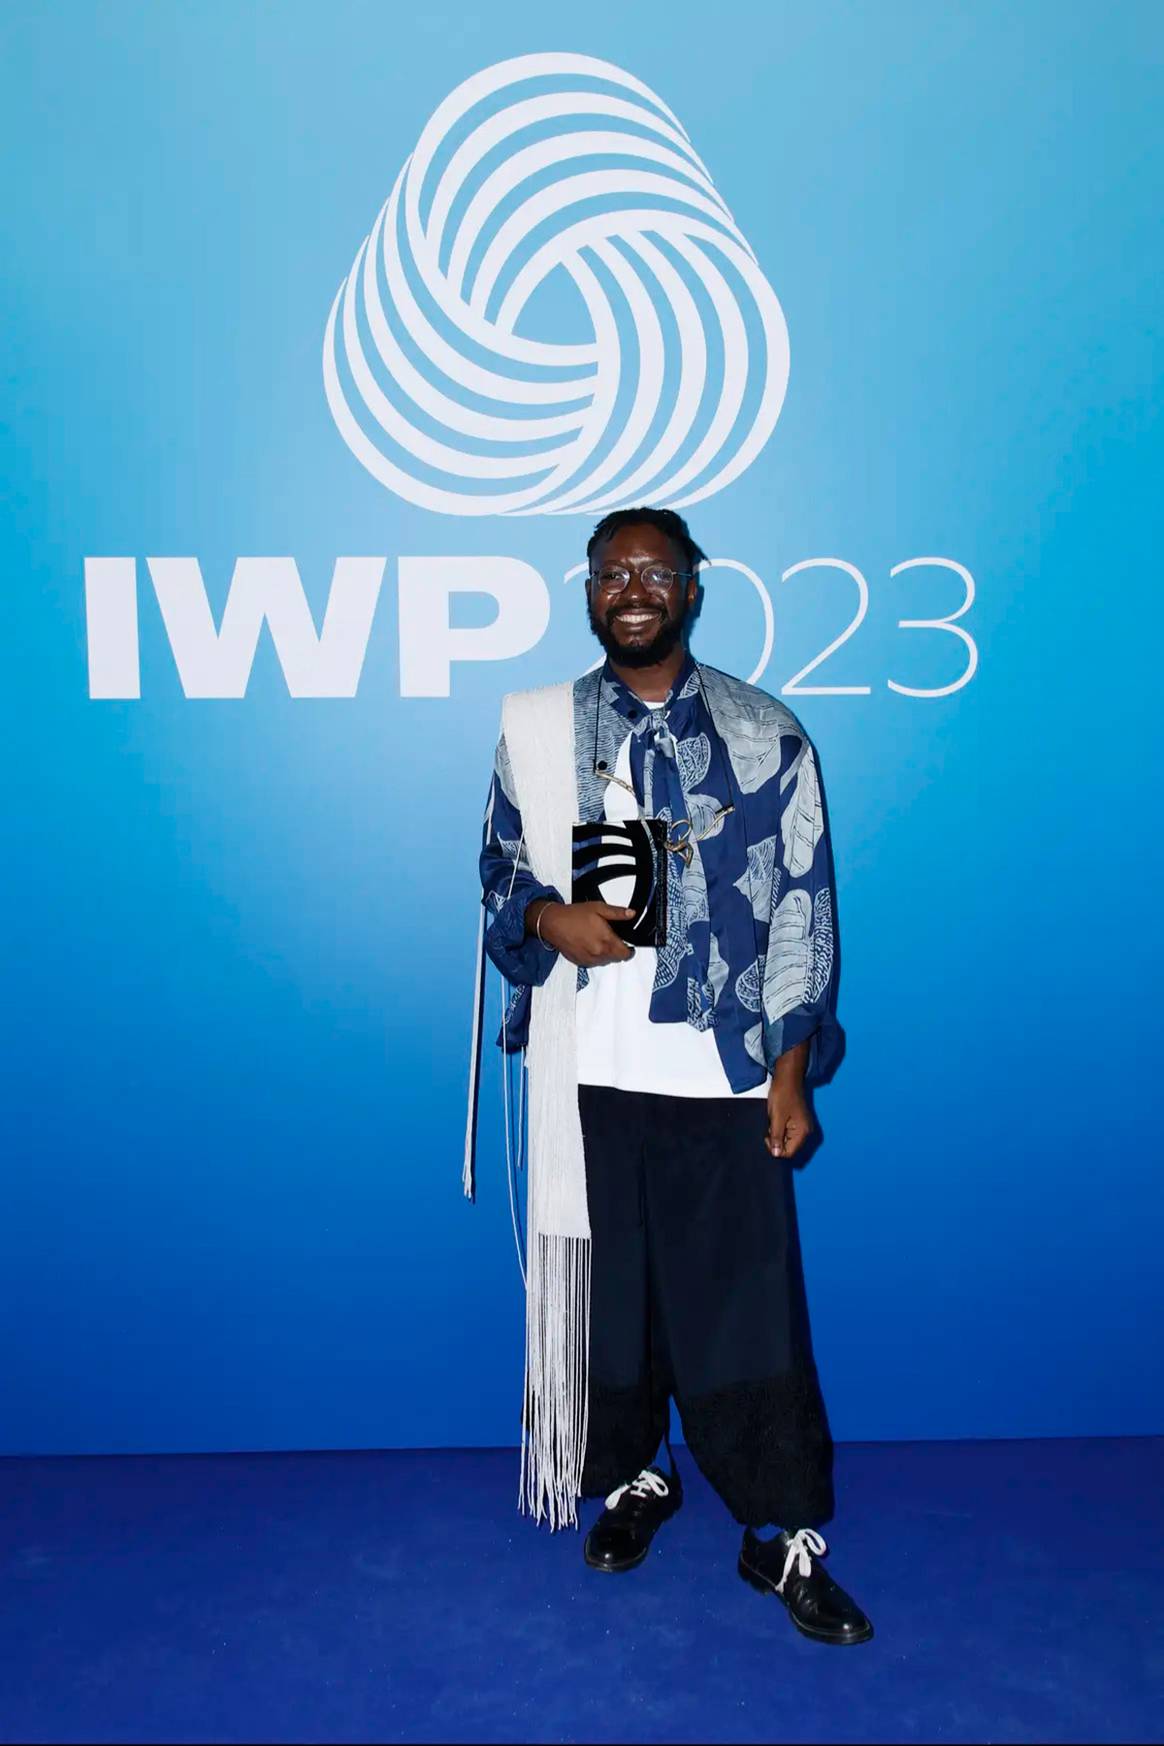 Photo Credits: Adeju Thompson, director creativo de Lagos Space Programme, firma de moda ganadora del IWP 2023. Woolmark Prize, página oficial.